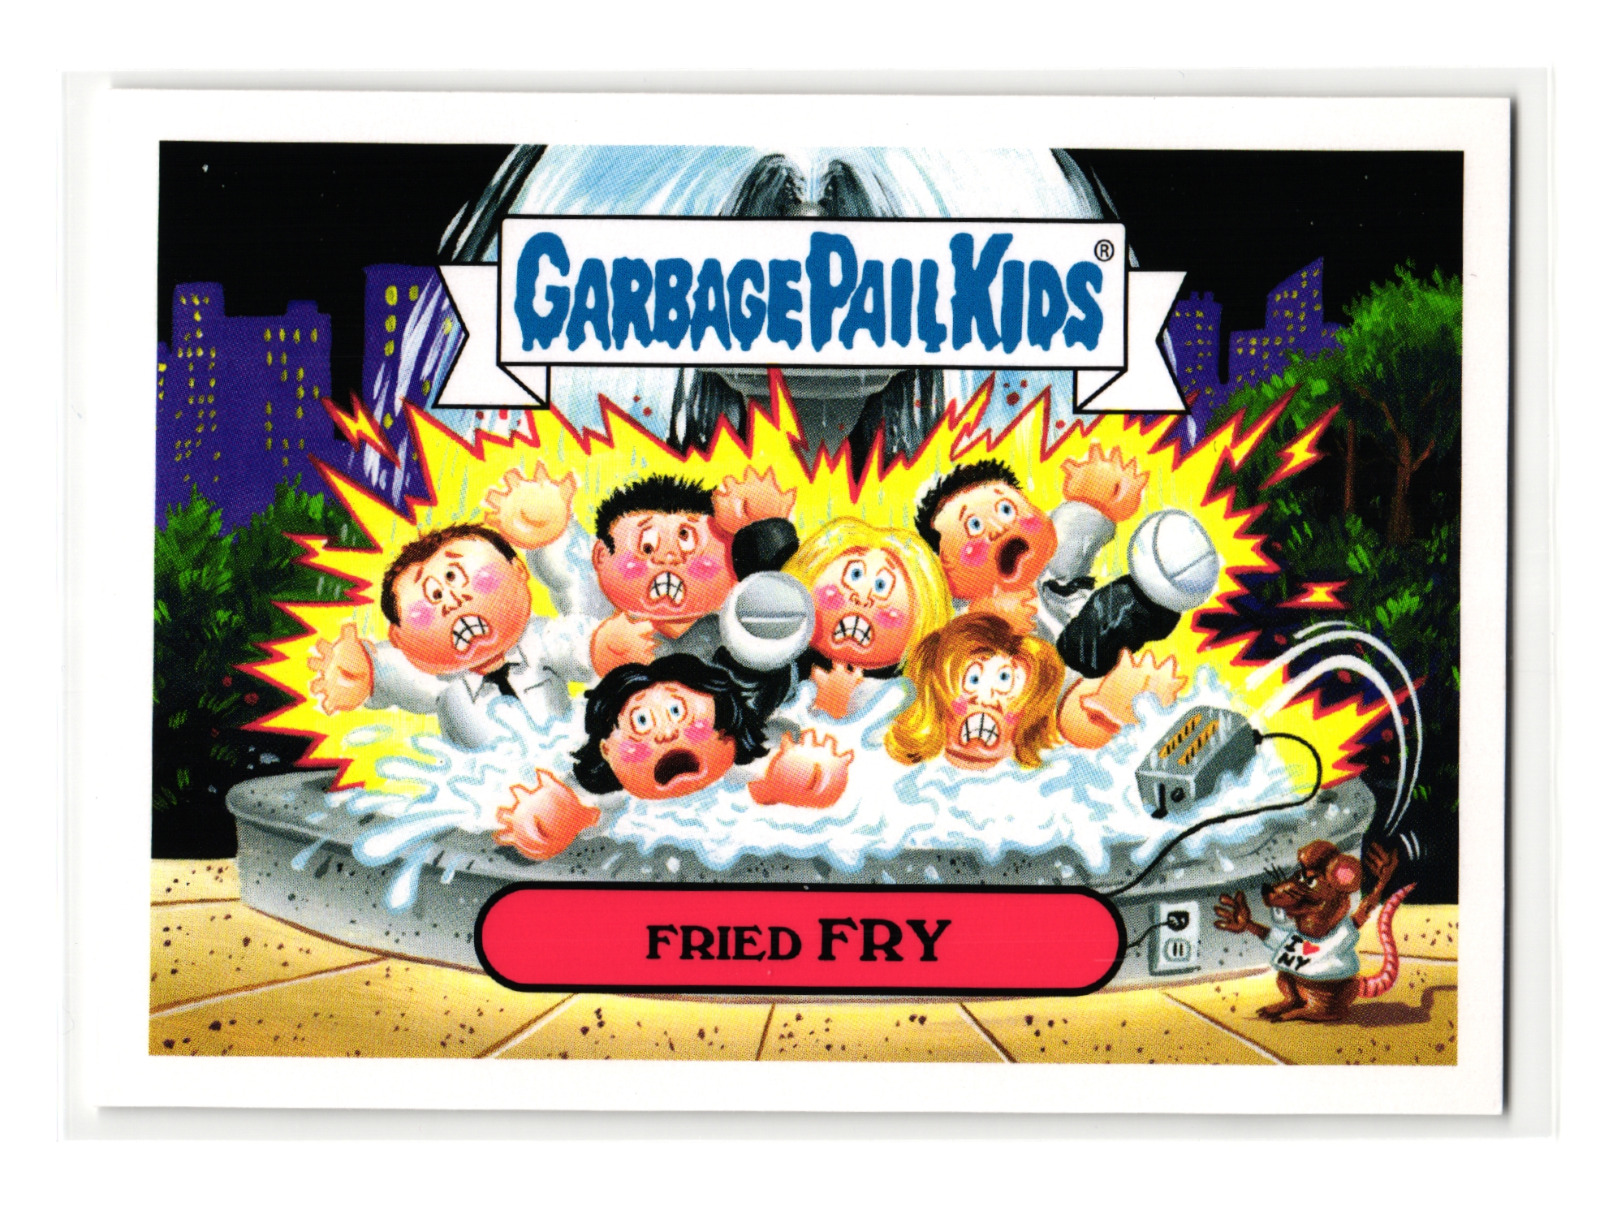 Fried Fry 2016 Topps Garbage Pail Kids Friends Parody Sticker Card 1b